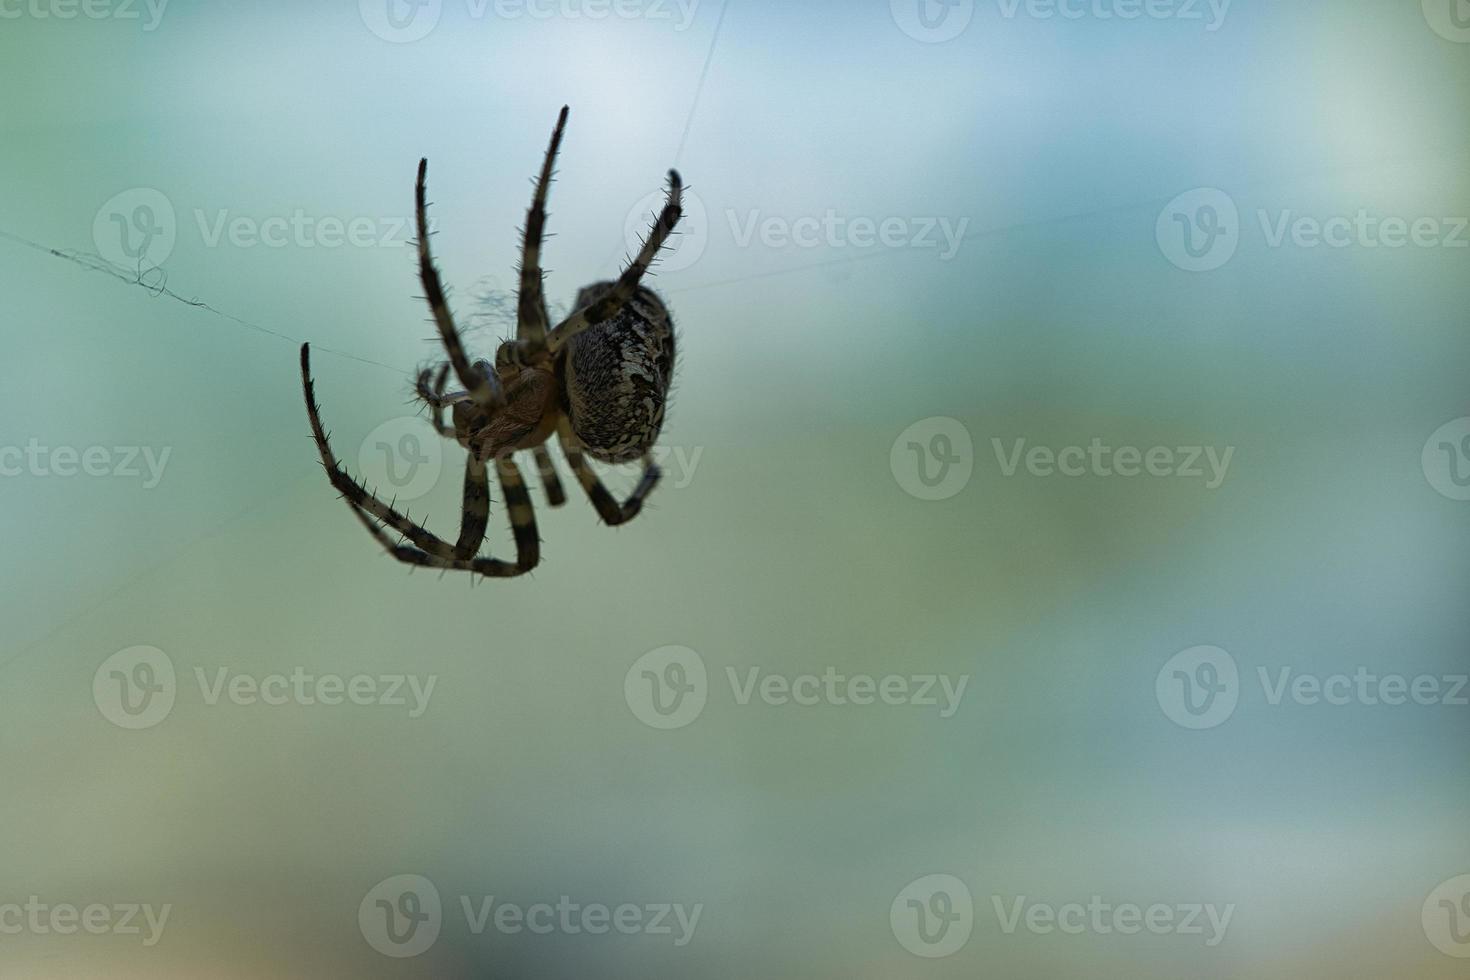 Kreuzspinne, die auf einem Spinnenfaden kriecht. verschwommen. ein nützlicher Jäger unter den Insekten foto